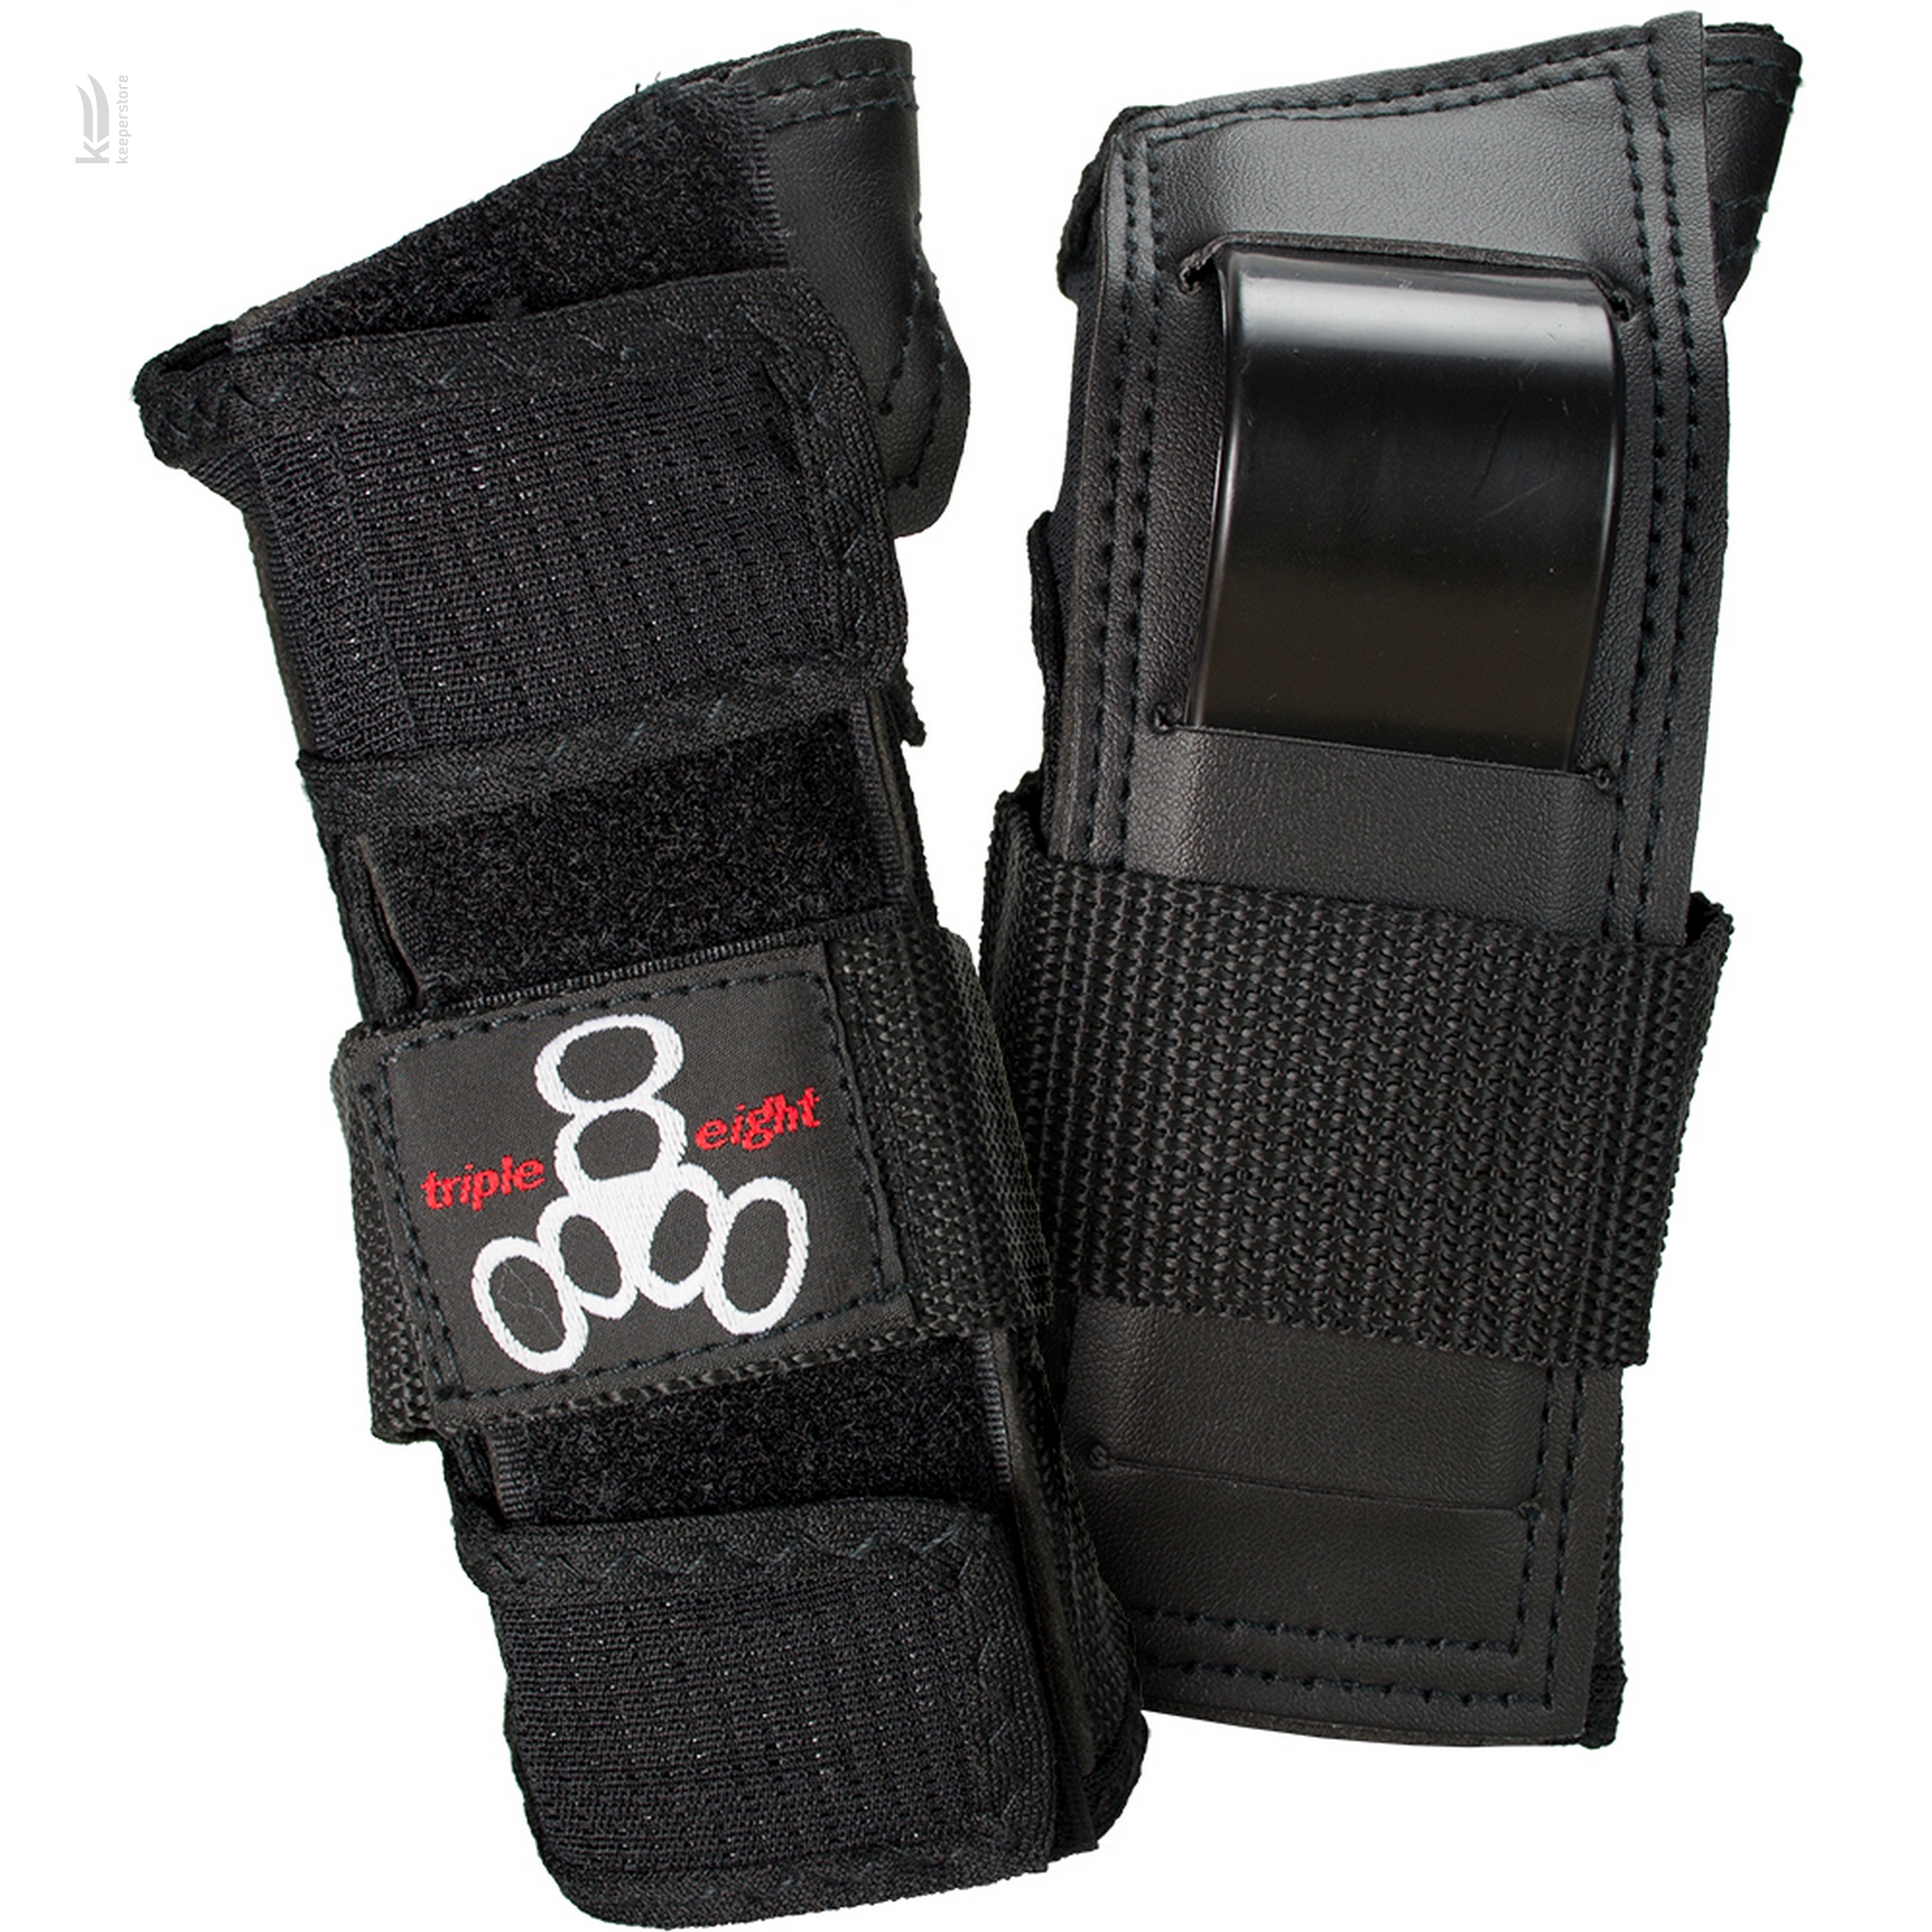 Захист зап'ястя Triple8 Rental Wristsaver